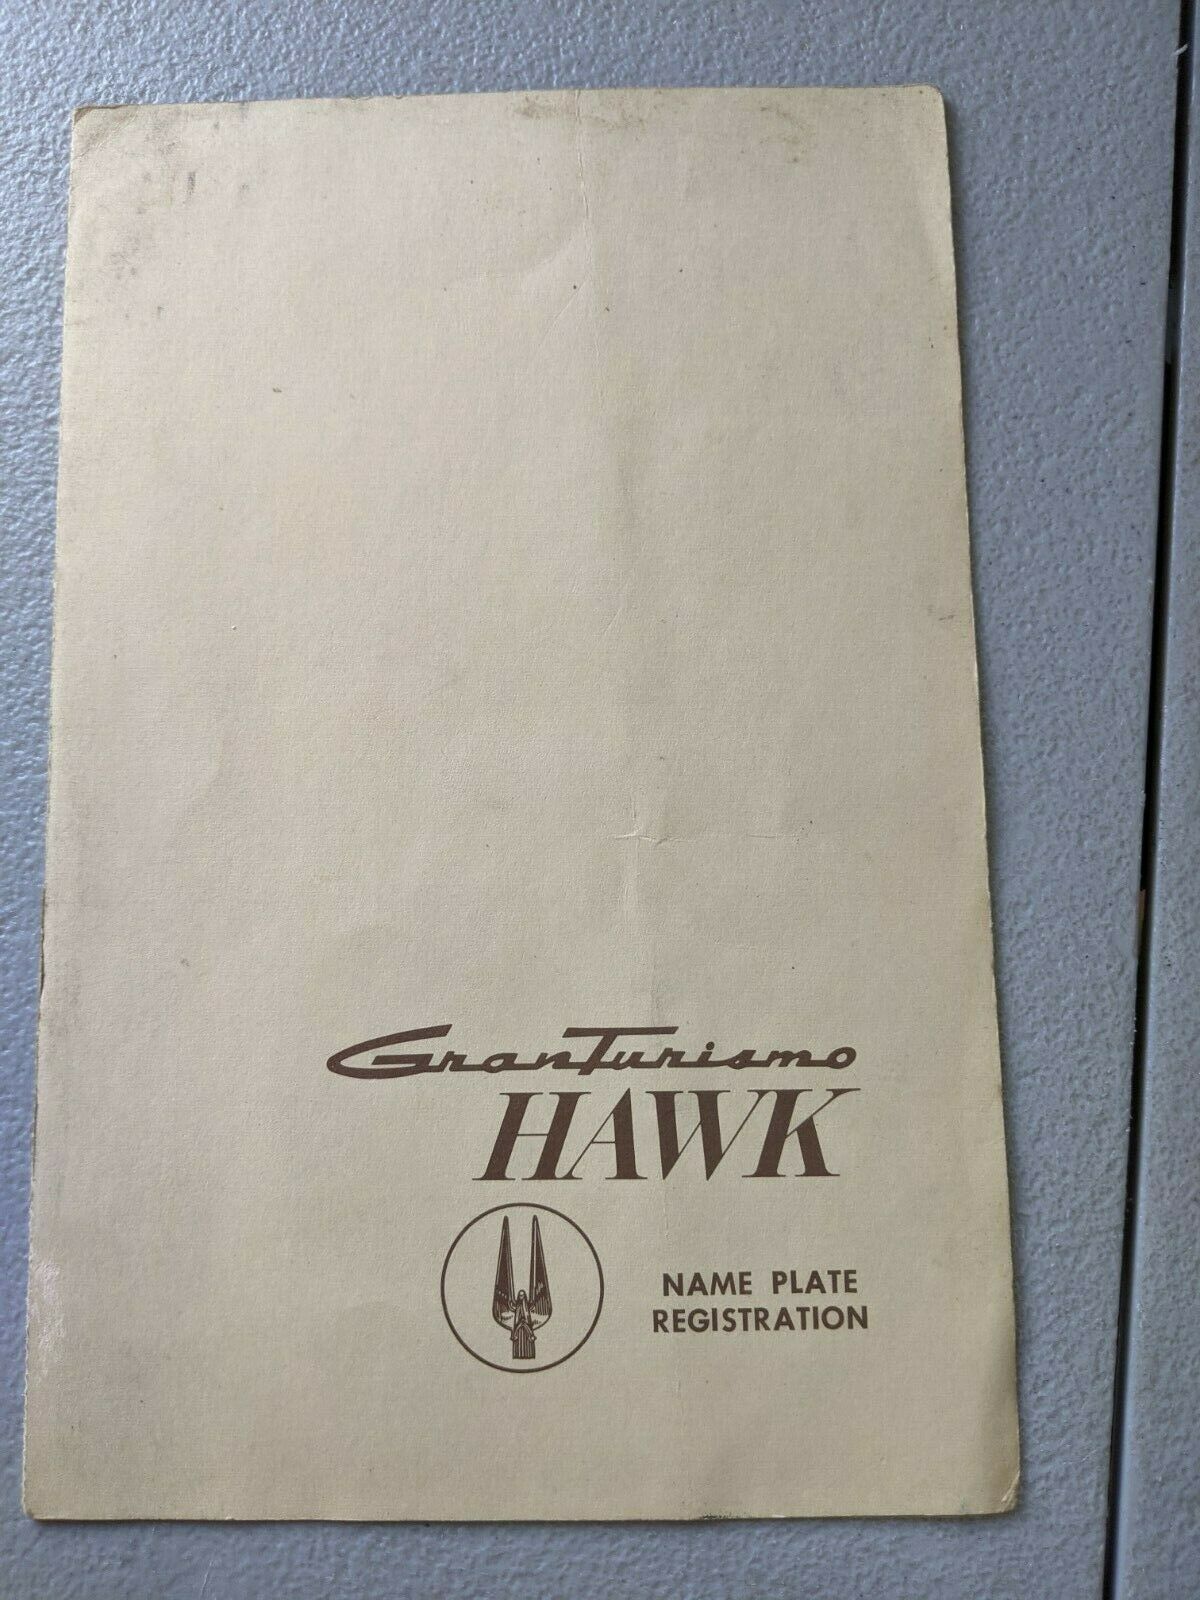 Studebaker Gt Hawk Name Plate Registration Form